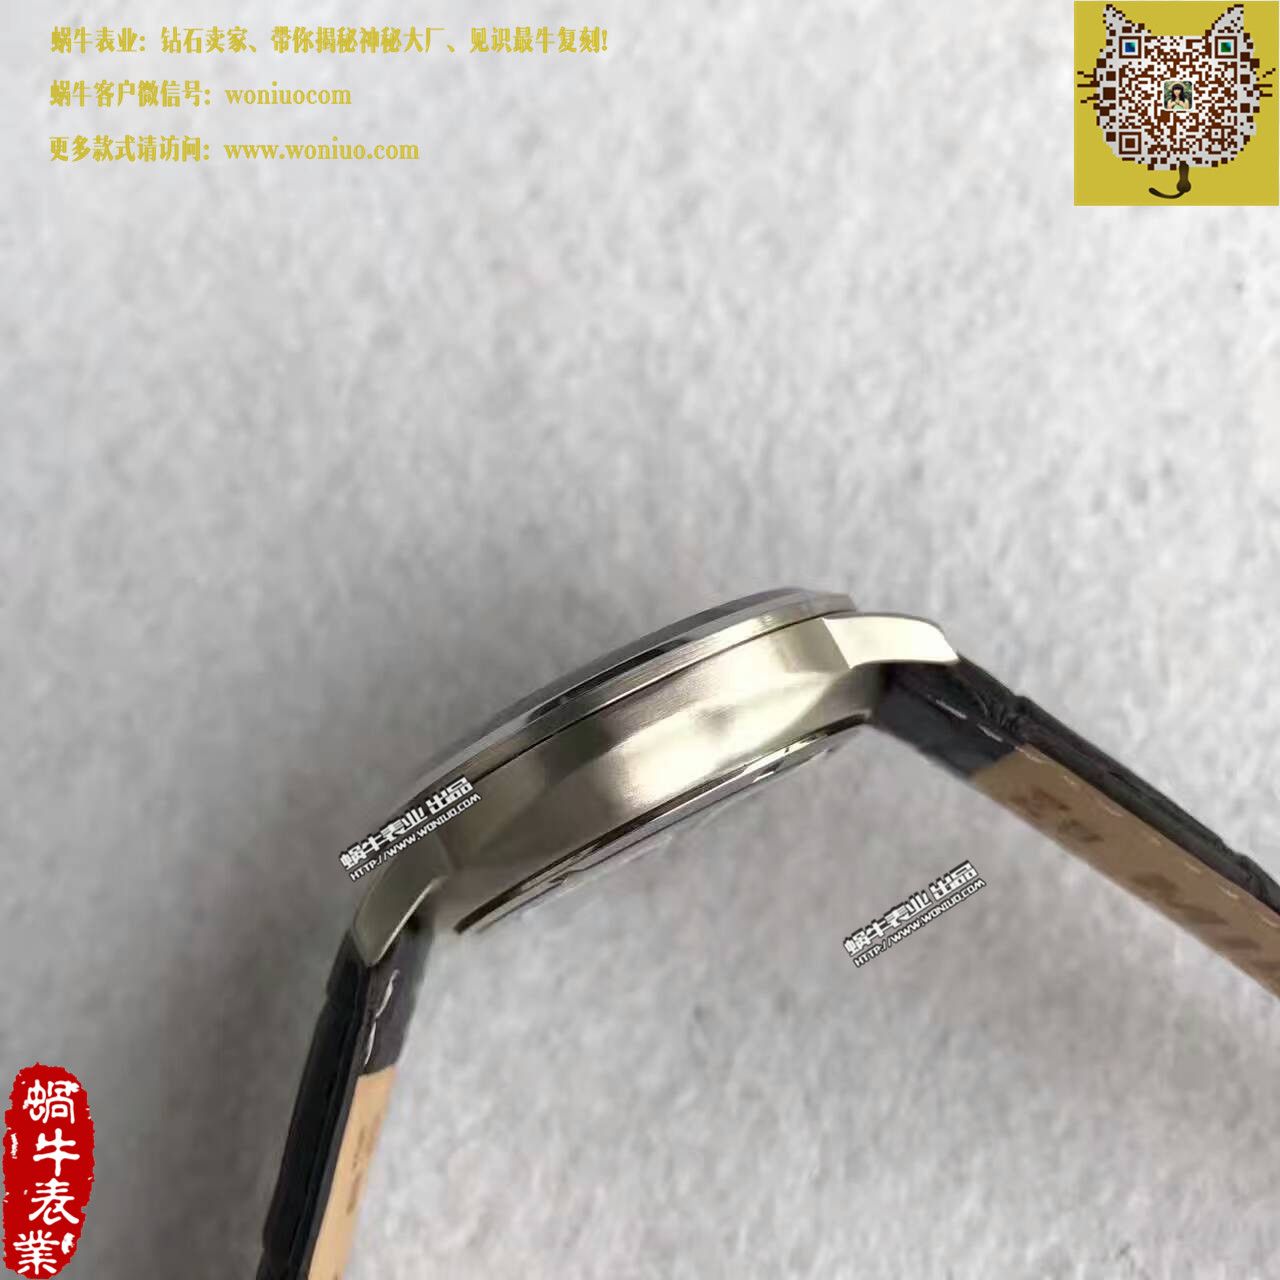 【台湾厂1比1超A高仿手表】美度指挥官系列M021.431.11.061.01腕表 